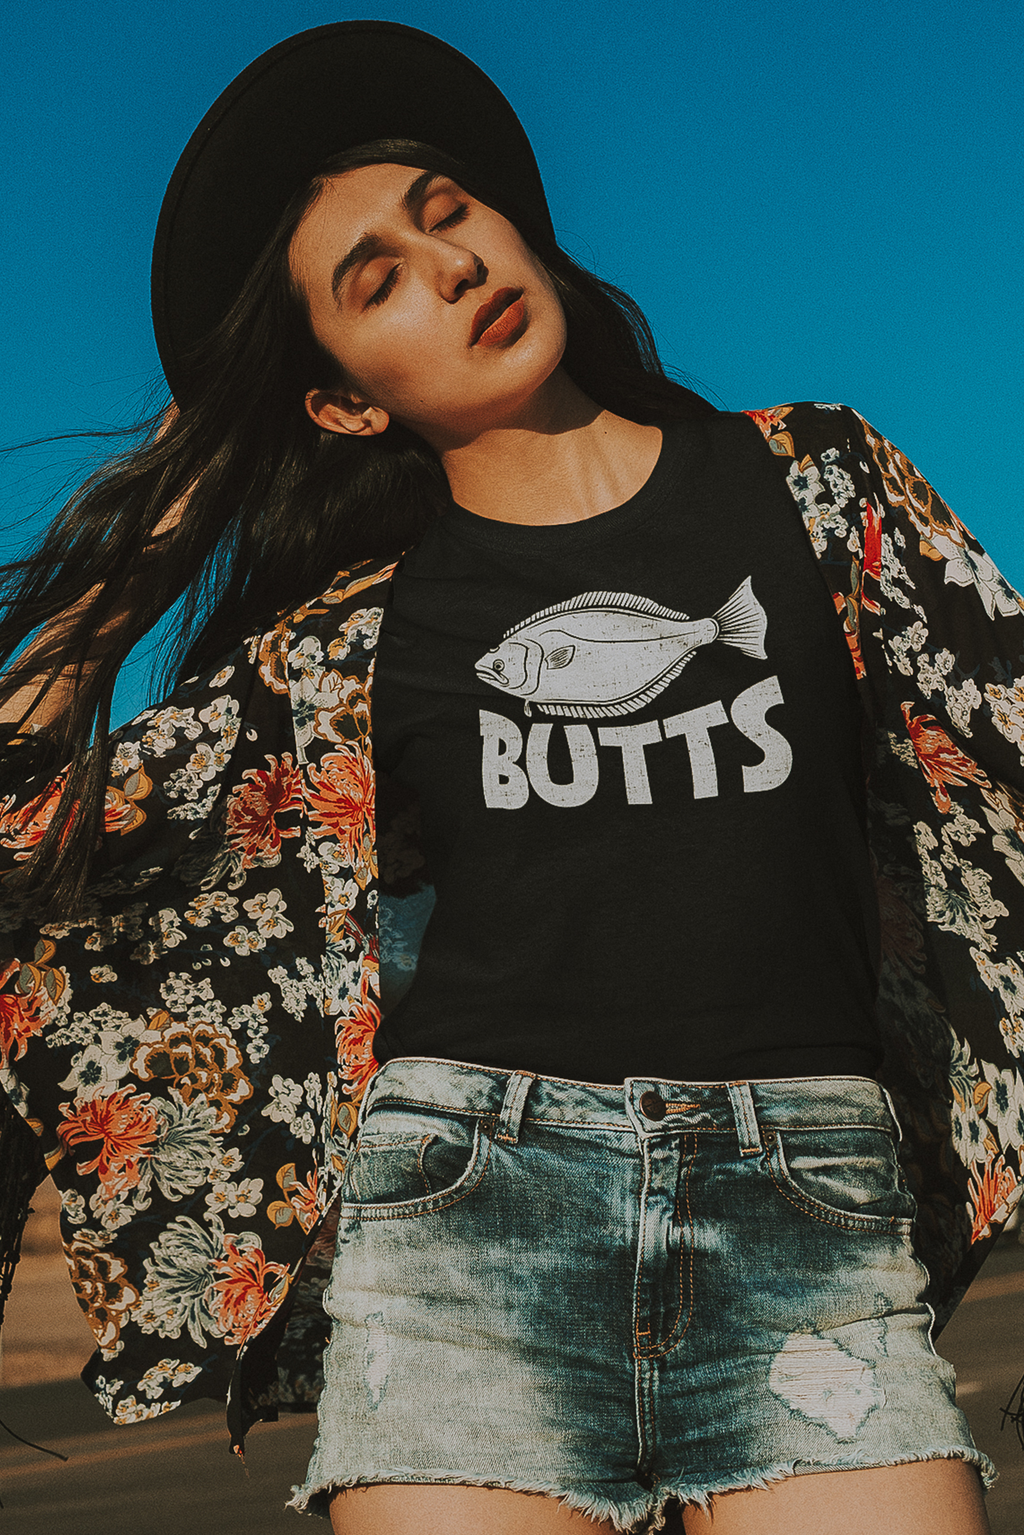 Butts - Women's